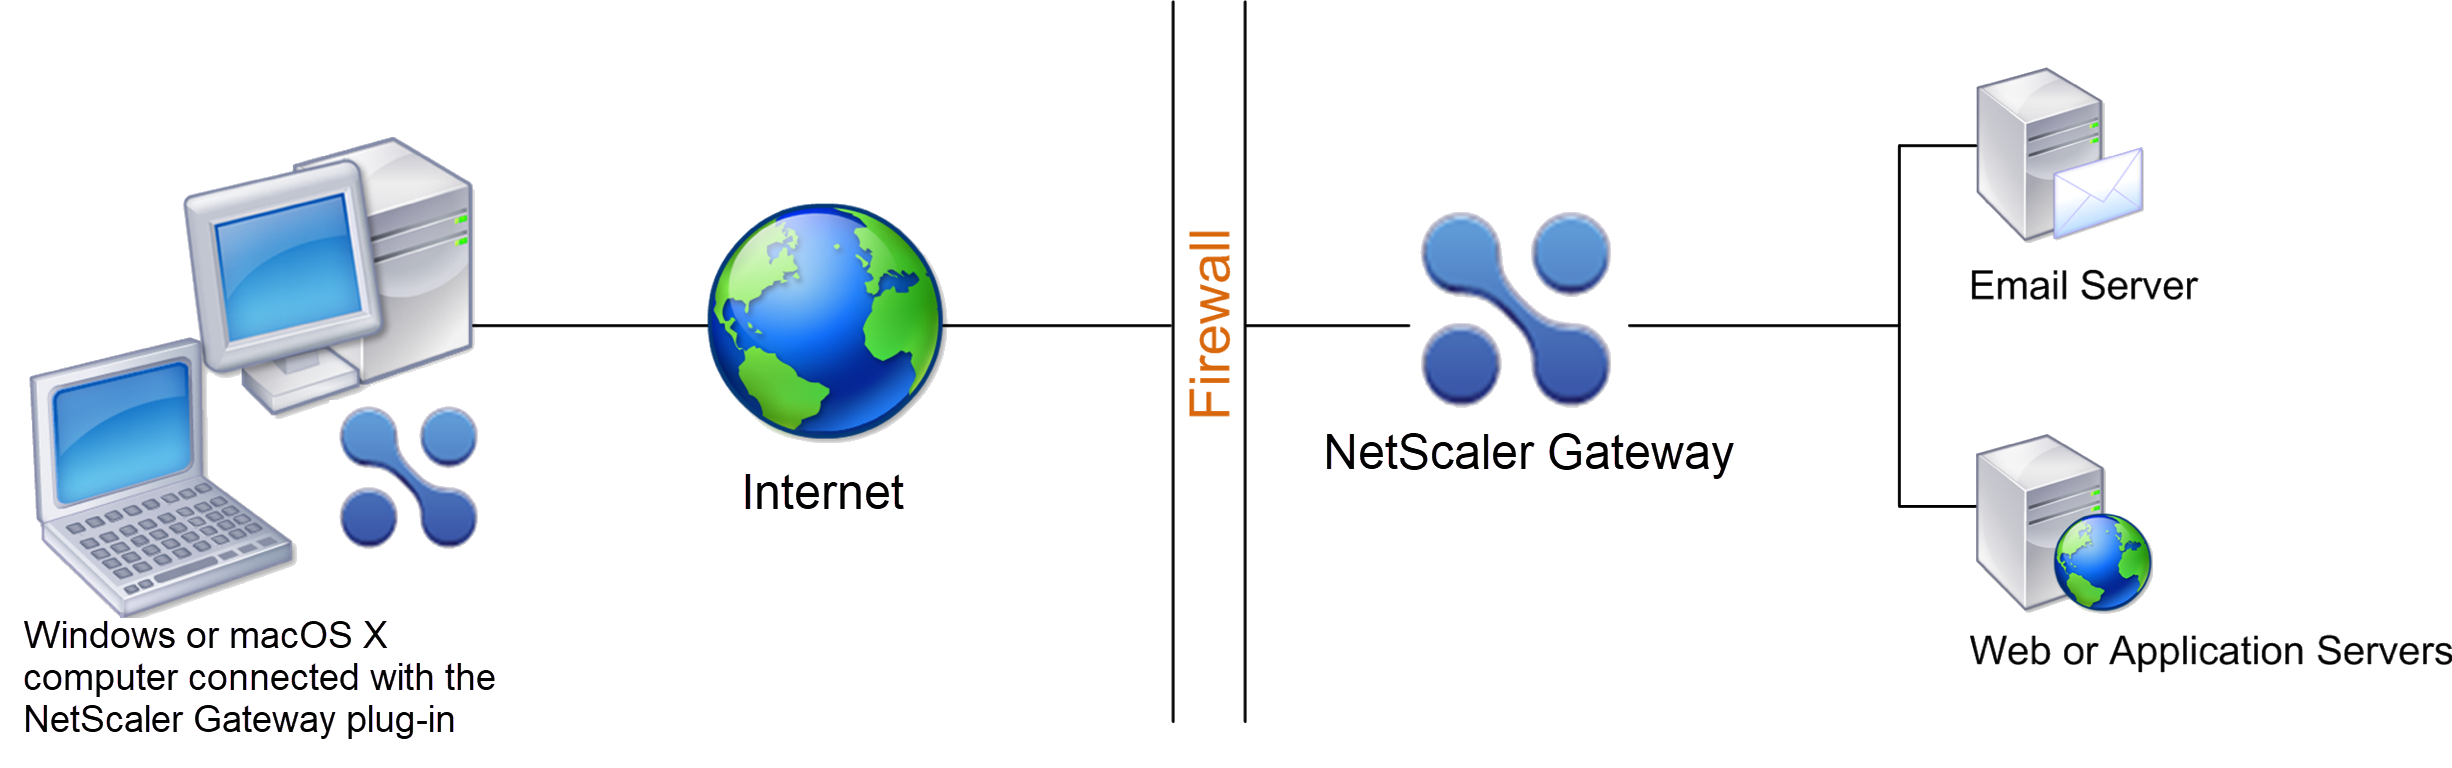 Deploy NetScaler Gateway in Secure Network